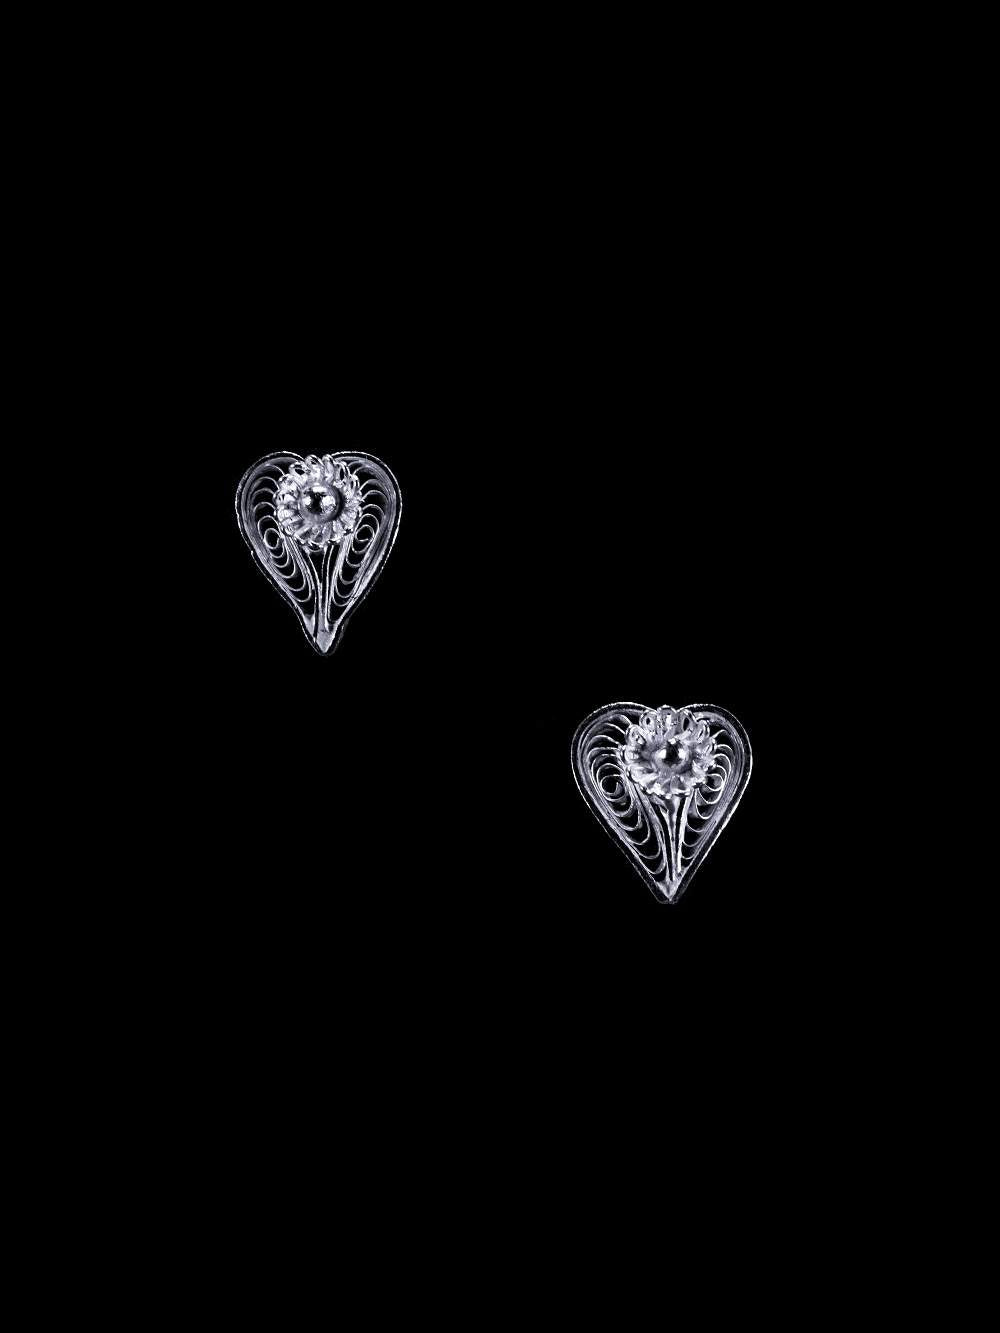 Heart shaped earrings online     